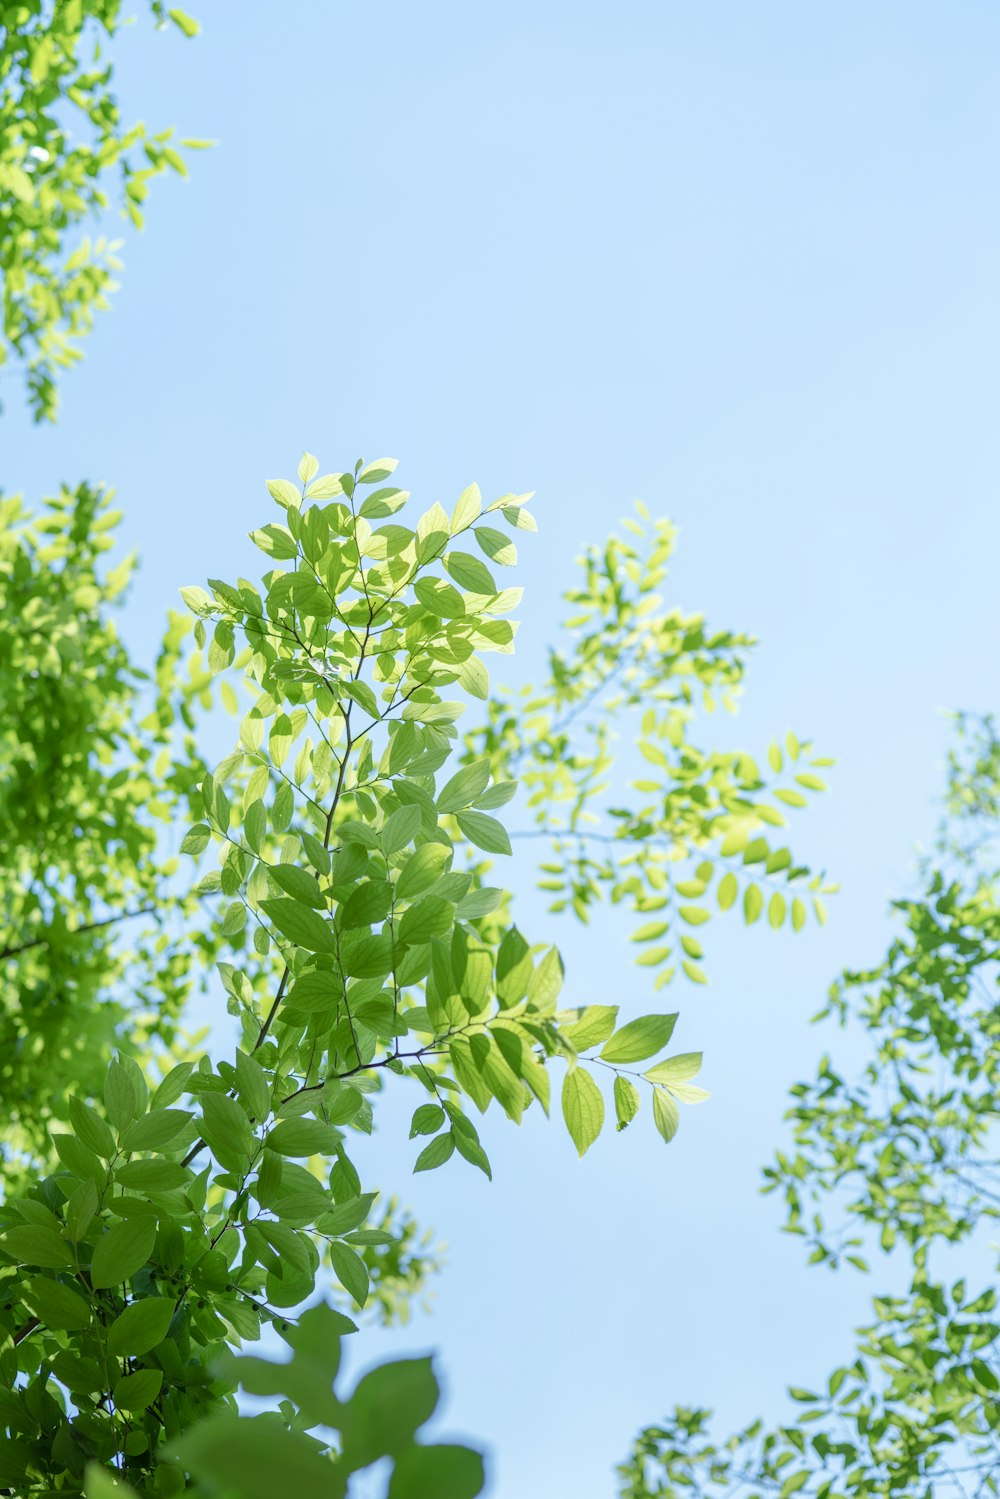 Tận hưởng vẻ đẹp thiên nhiên tươi mới với hình ảnh cây trên Unsplash miễn phí. Chất lượng hình ảnh tuyệt vời sẵn sàng để bạn đắm mình trong màu xanh lá của cây cối và cảm nhận sự thanh thản. Click vào hình ảnh để trải nghiệm cảm giác thực tế.